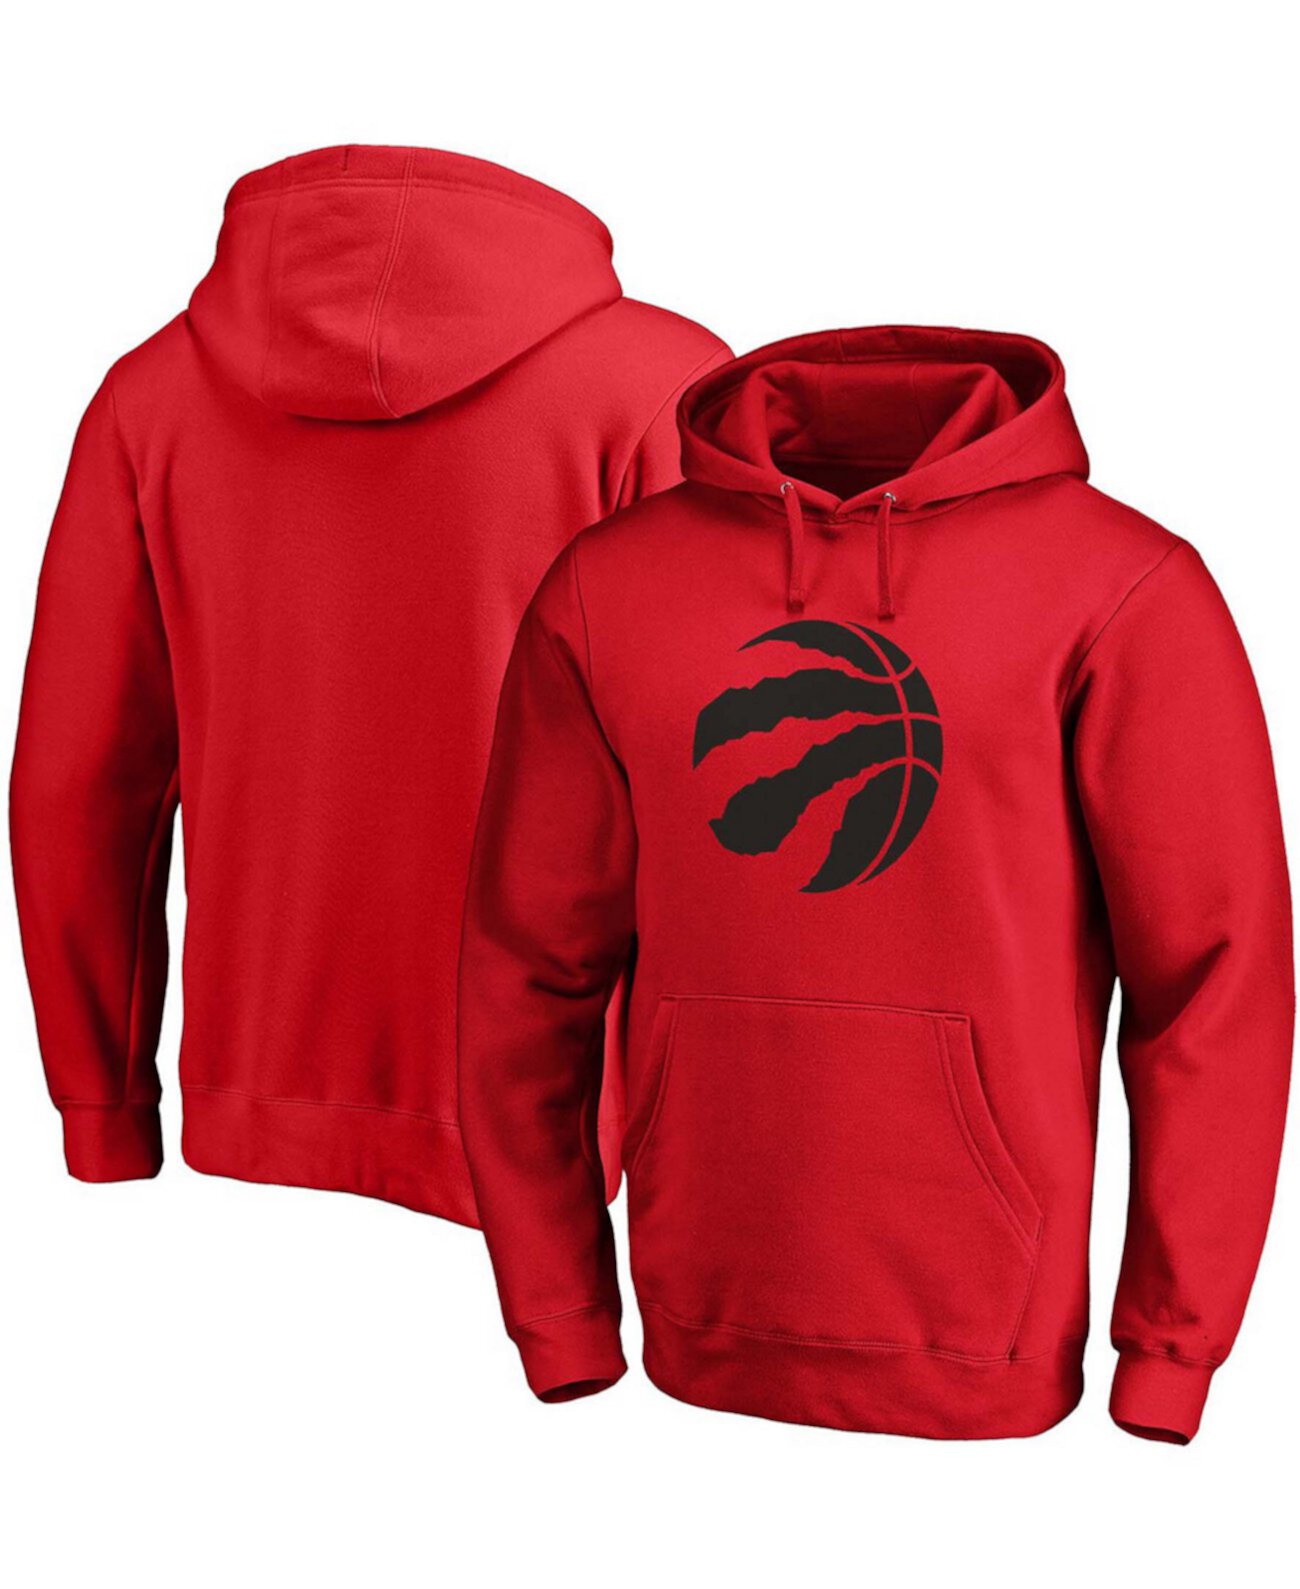 Мужская толстовка с капюшоном Red Toronto Raptors с логотипом основной команды Fanatics